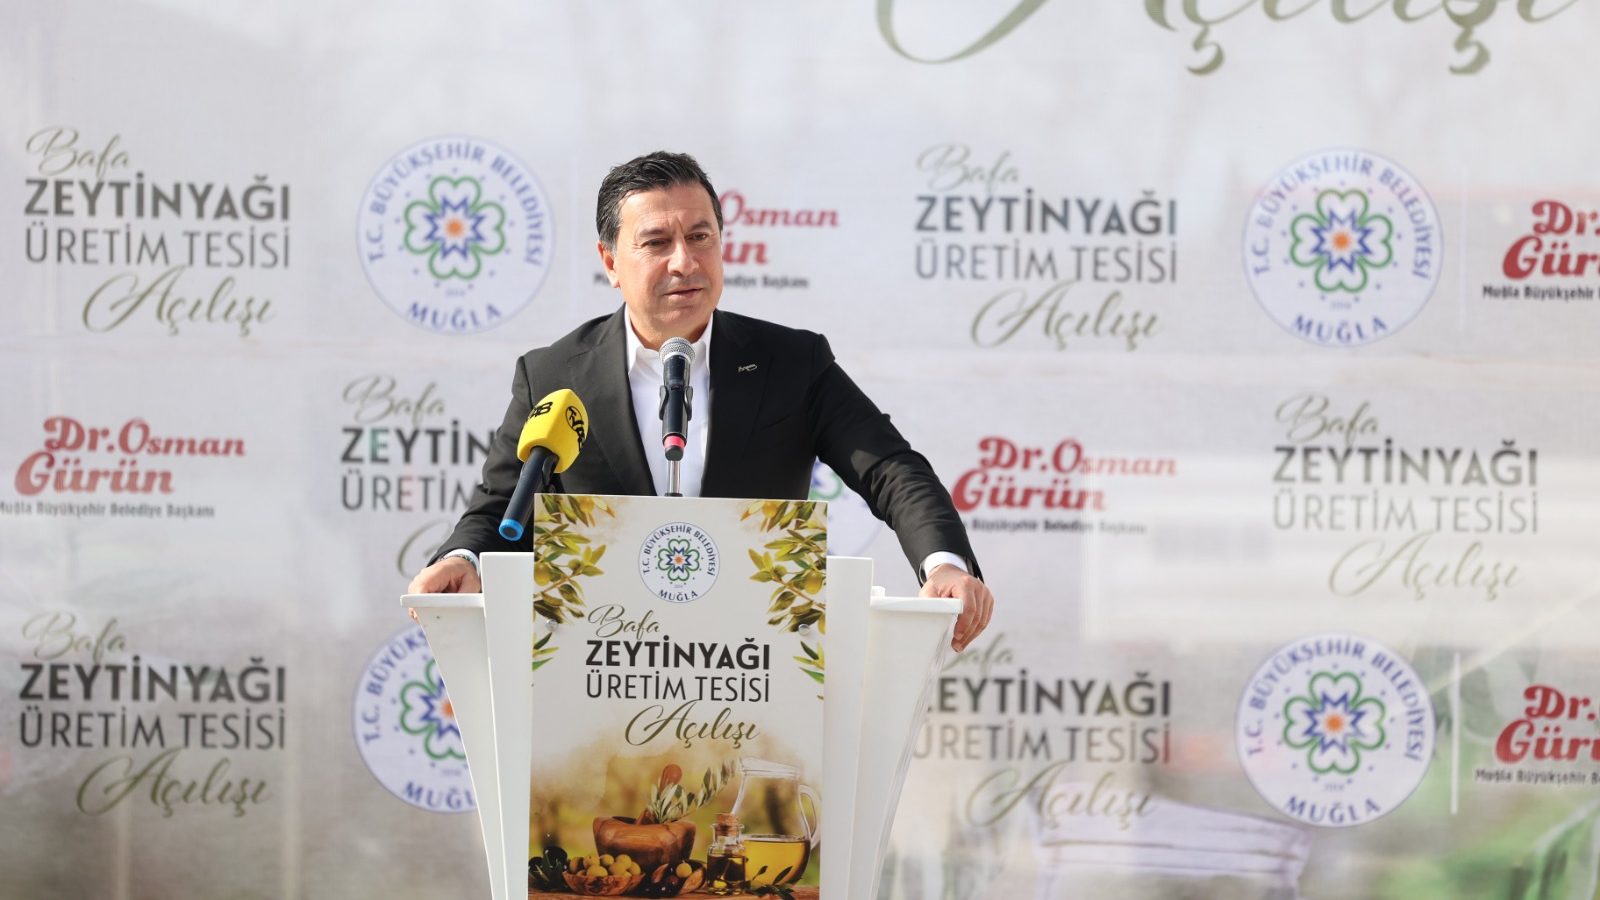 Milas'ta Bafa zeytinyağı üretim, Bafa zeytinyağı üretim tesisi, Bafa Doğal Yaşam Tarımsal Üretim ve Pazarlama Kooperatifi, Muğla Büyükşehir Belediyesi